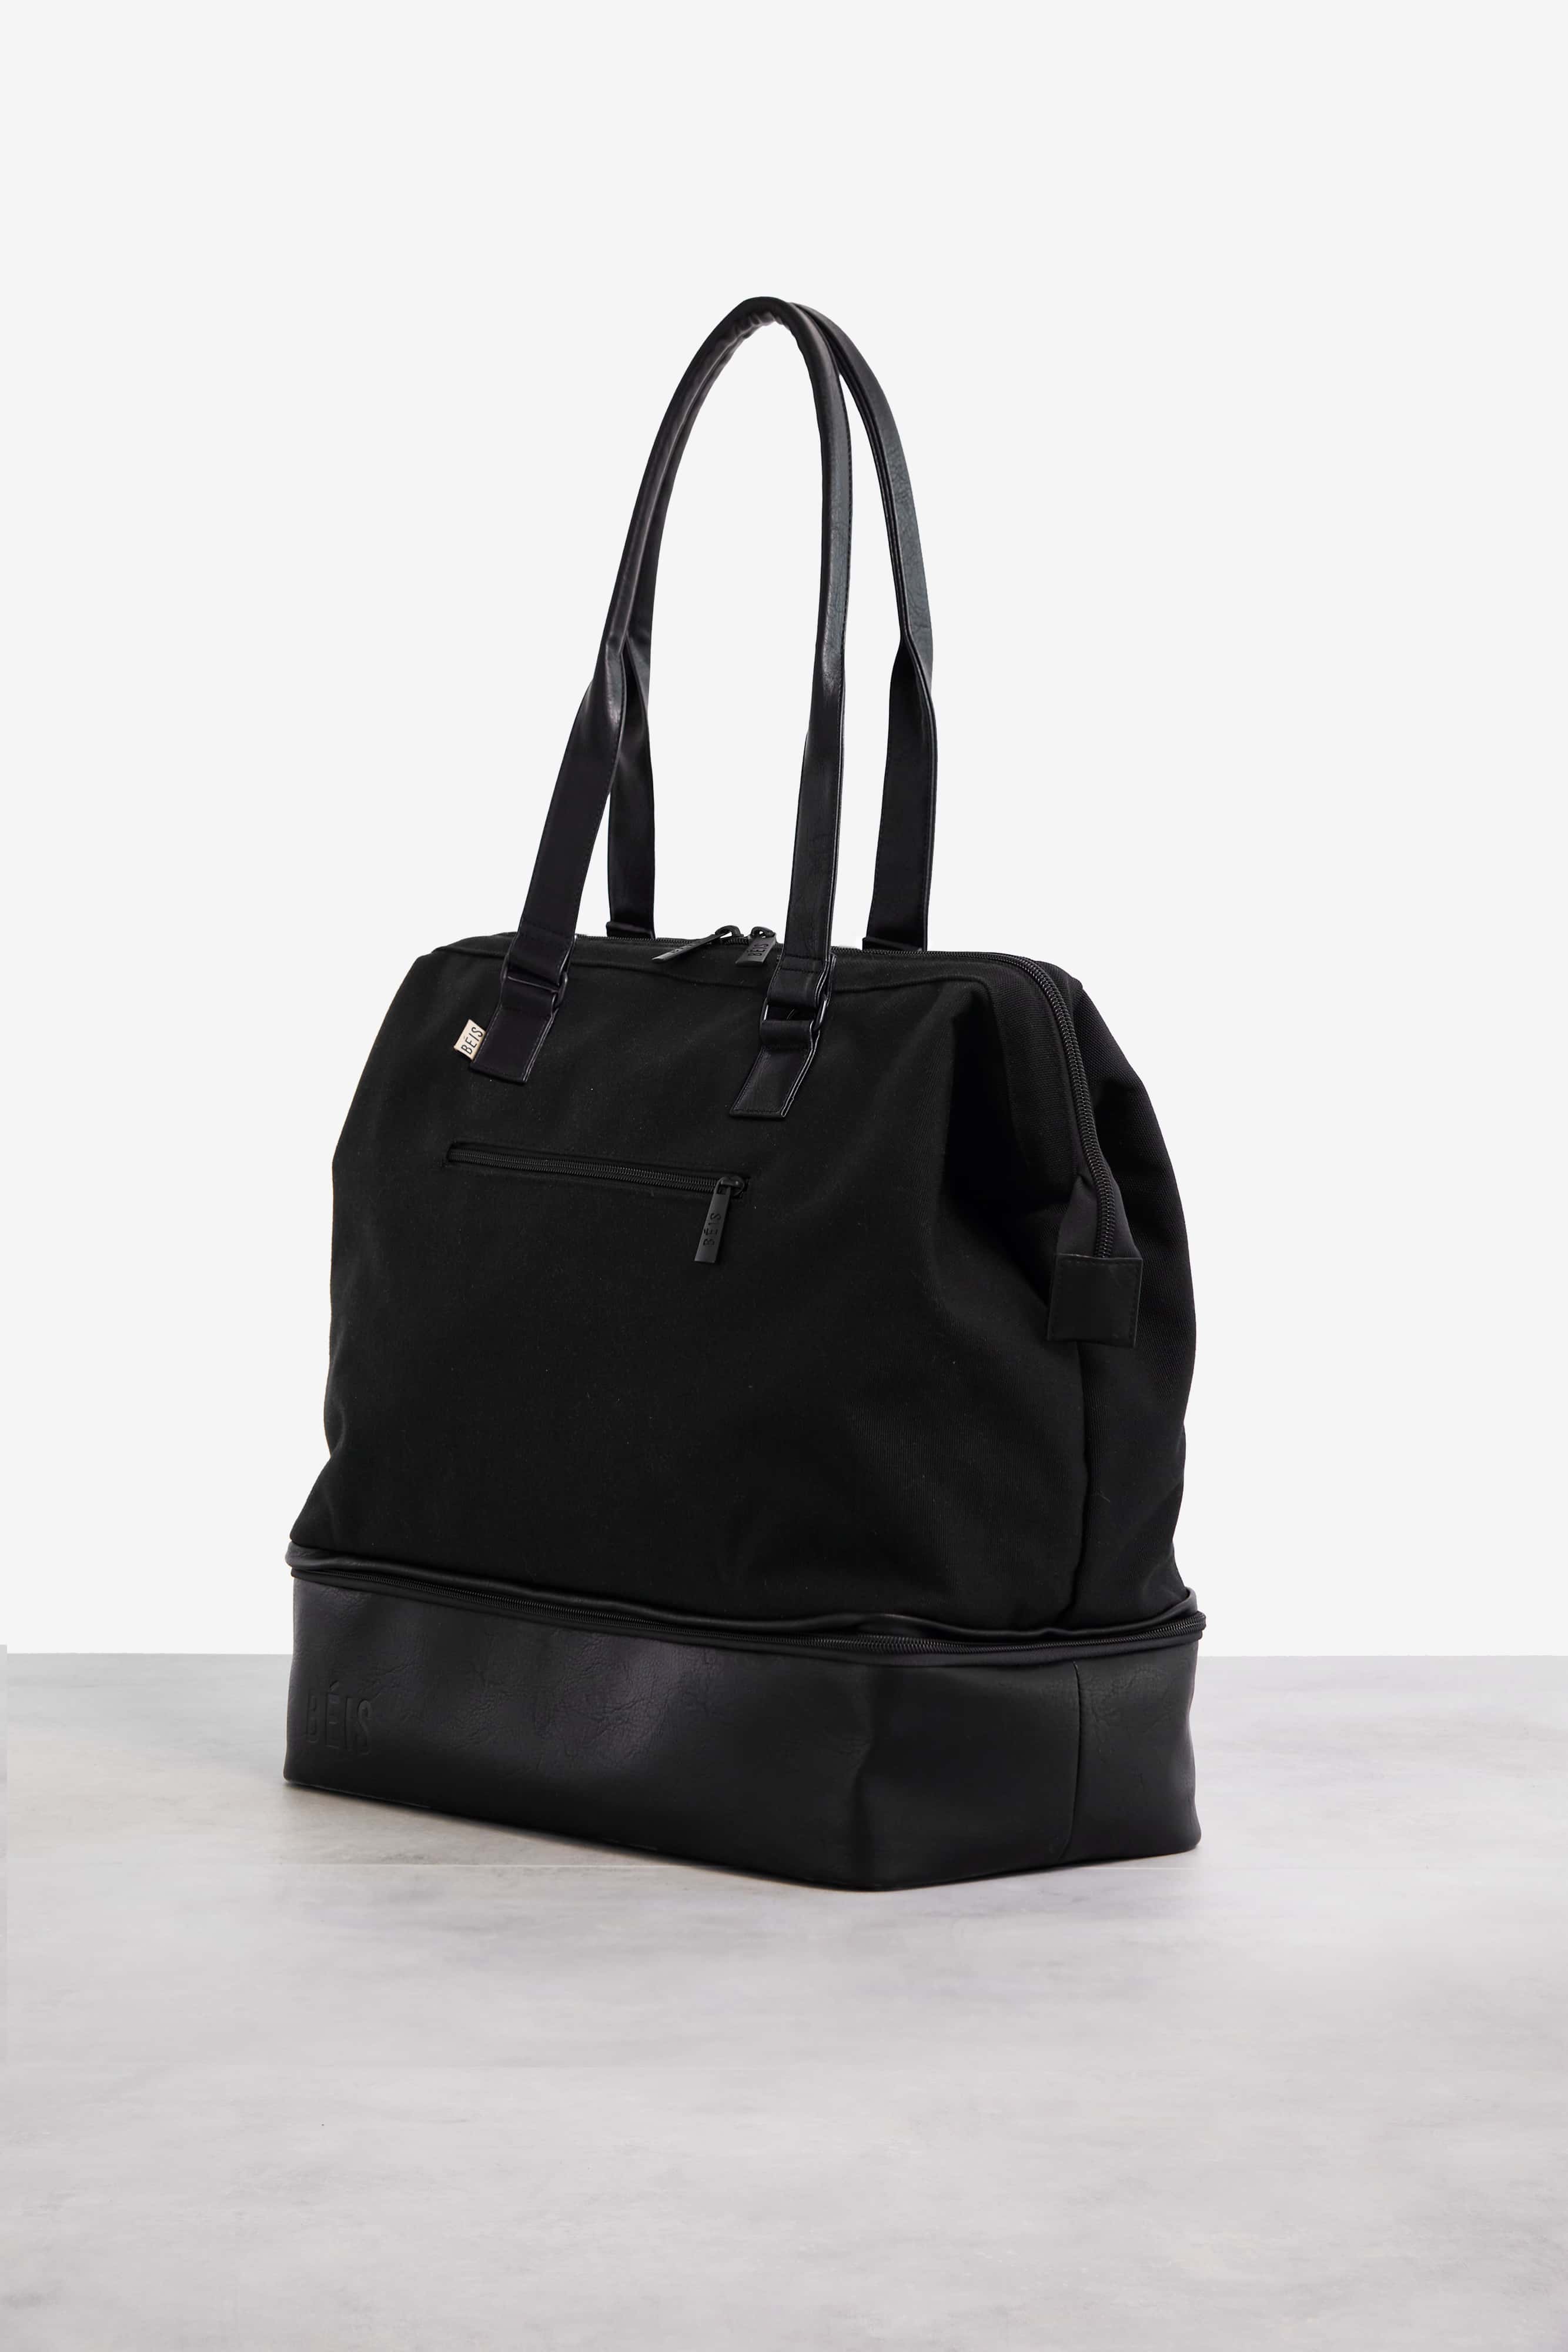 BÉIS 'The Convertible Mini Weekender' in Black - Small Weekend Bag 